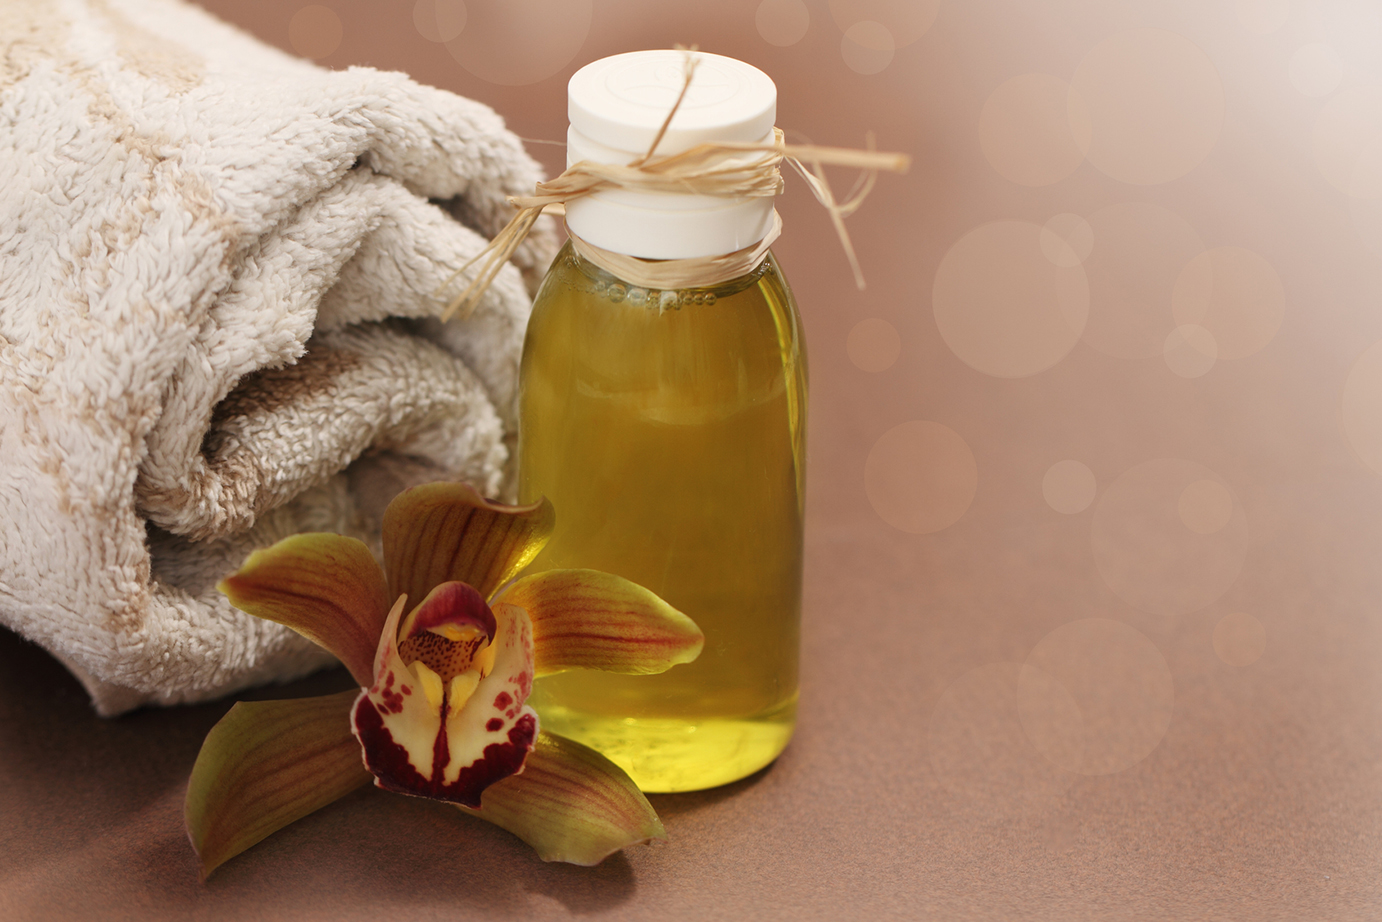 ᐅ Best Massage Oils Reviews → Compare Now